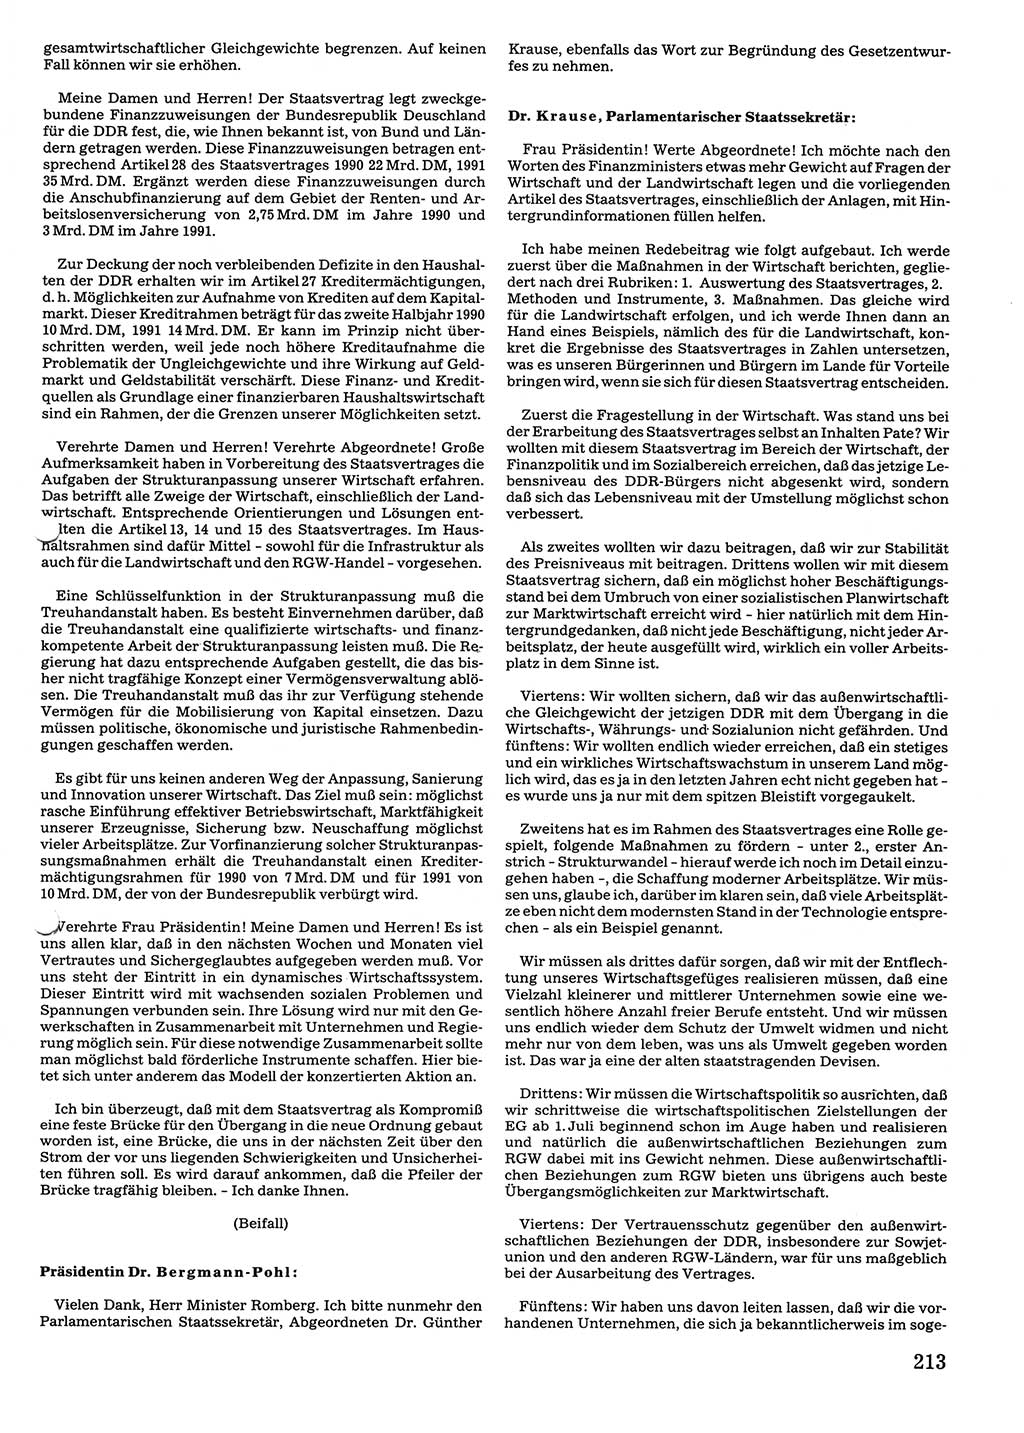 Tagungen der Volkskammer (VK) der Deutschen Demokratischen Republik (DDR), 10. Wahlperiode 1990, Seite 213 (VK. DDR 10. WP. 1990, Prot. Tg. 1-38, 5.4.-2.10.1990, S. 213)